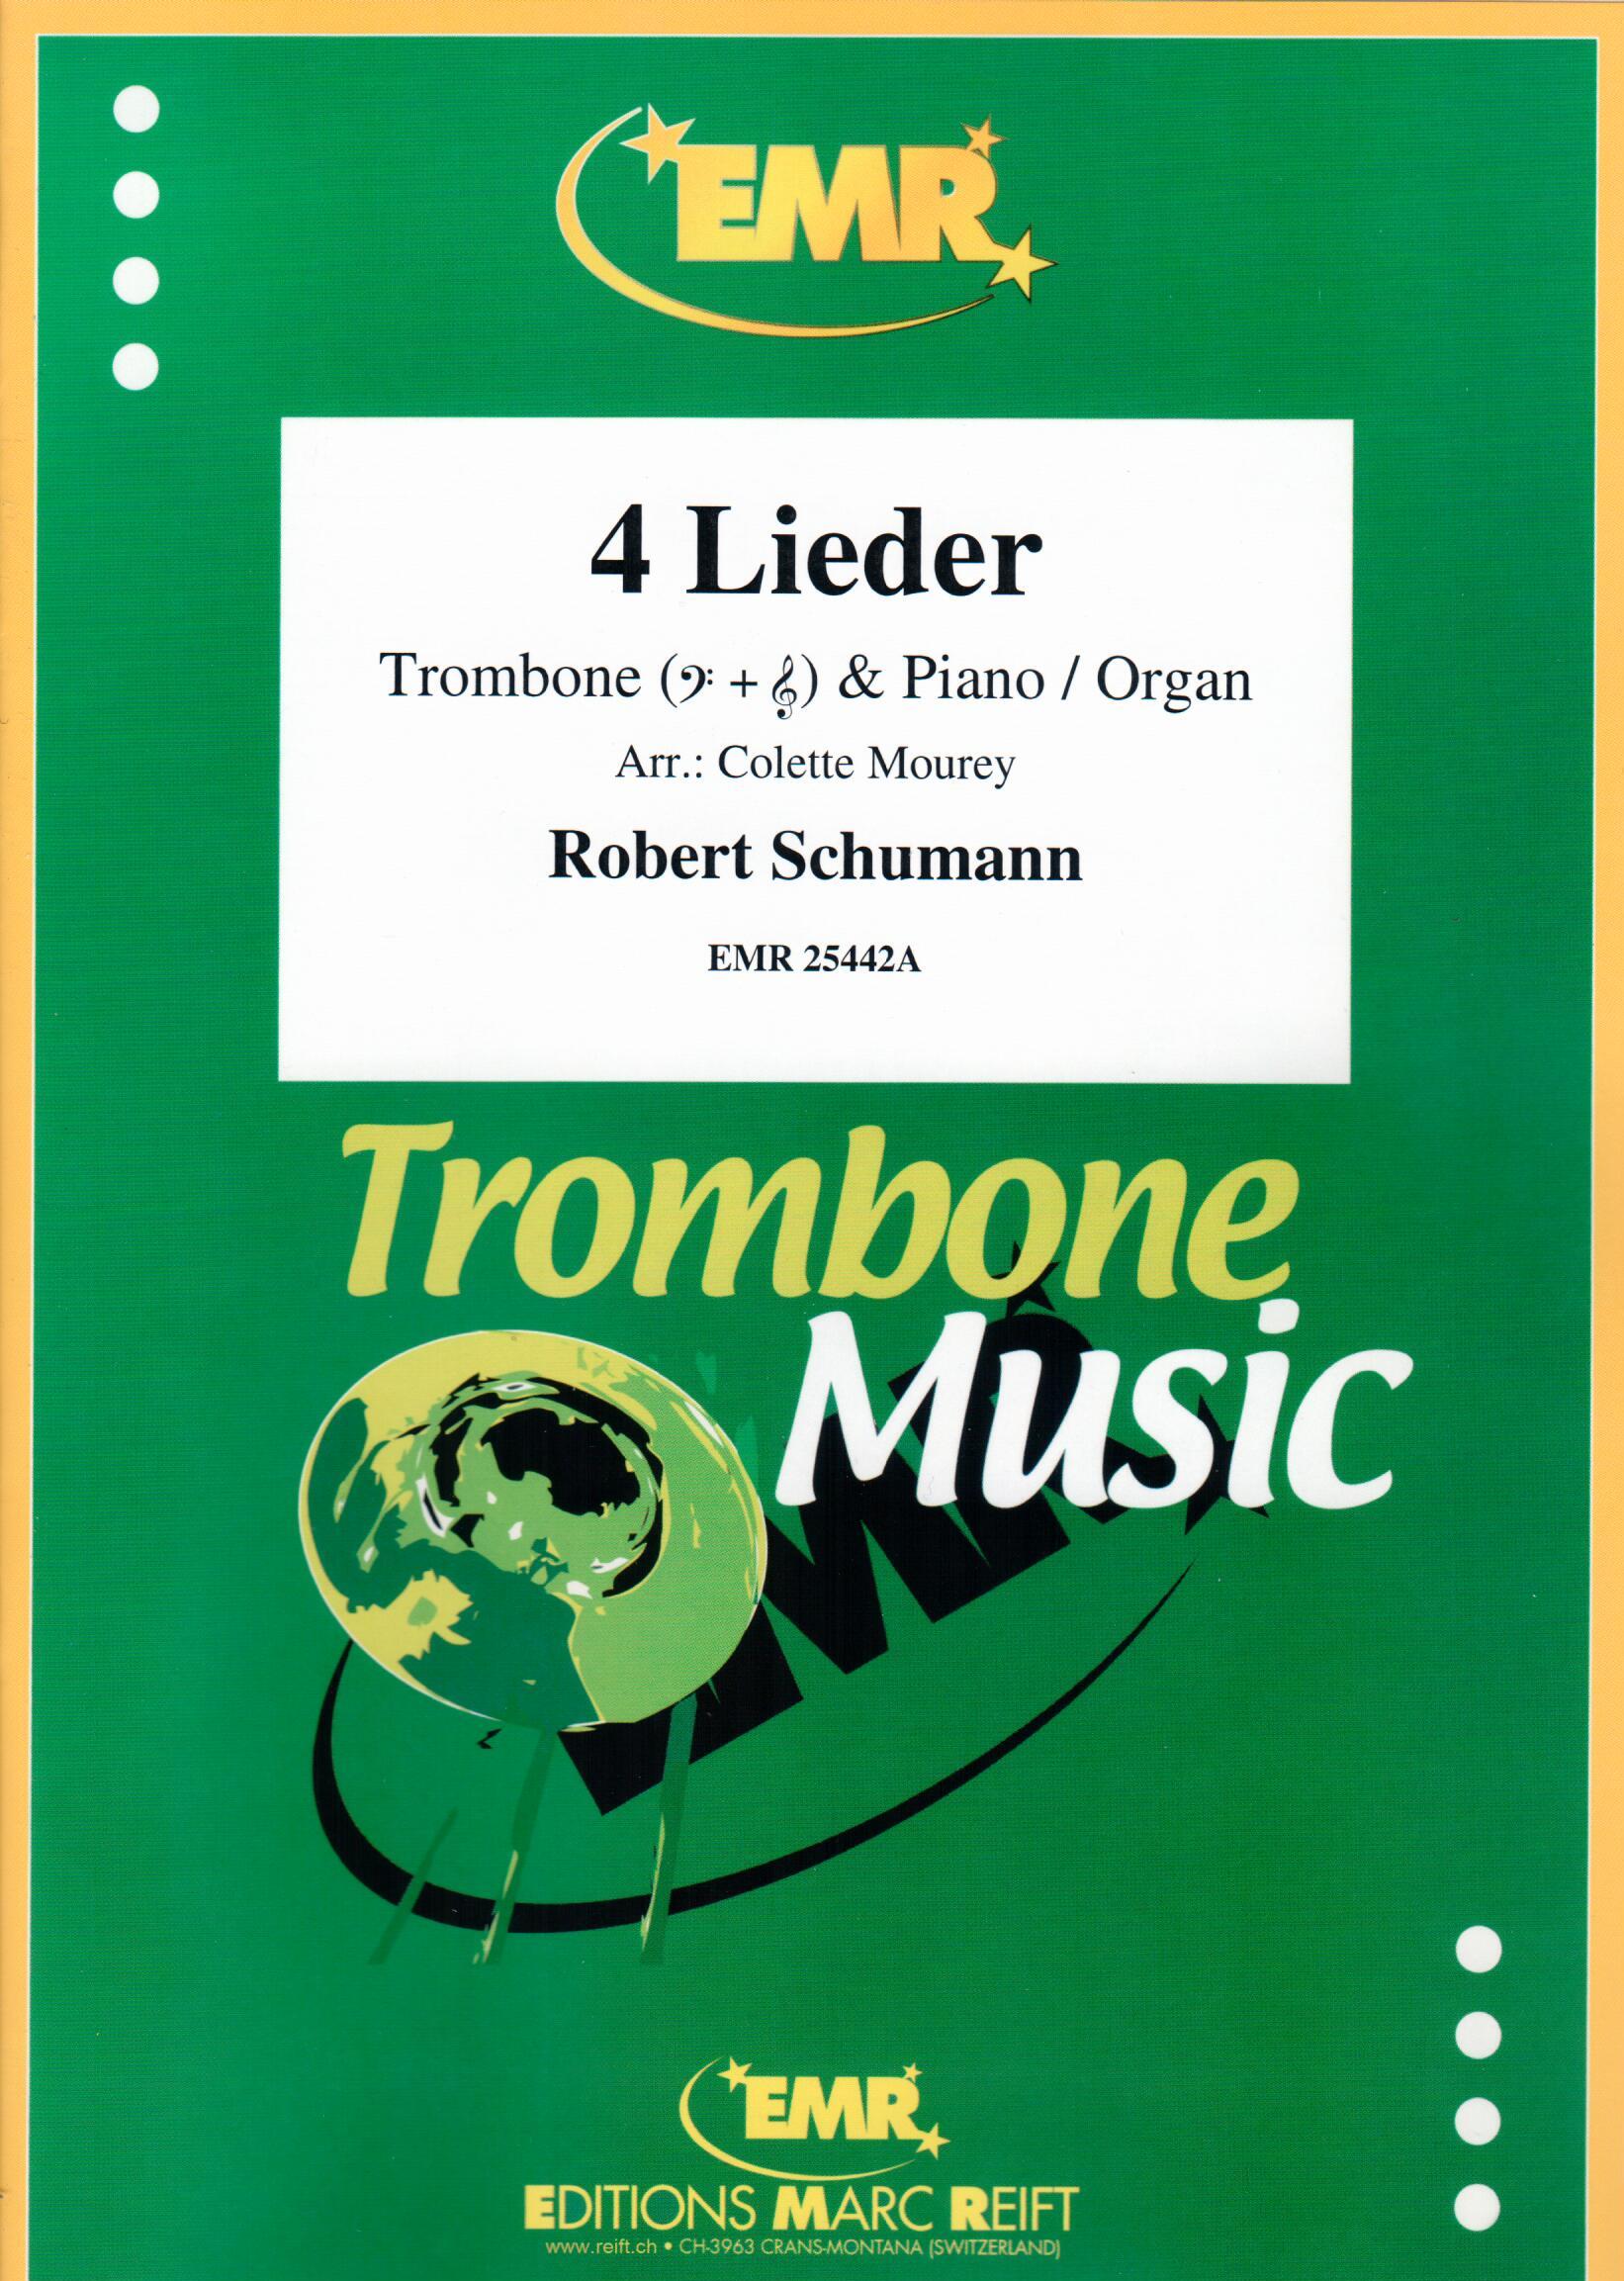 4 LIEDER, SOLOS - Trombone